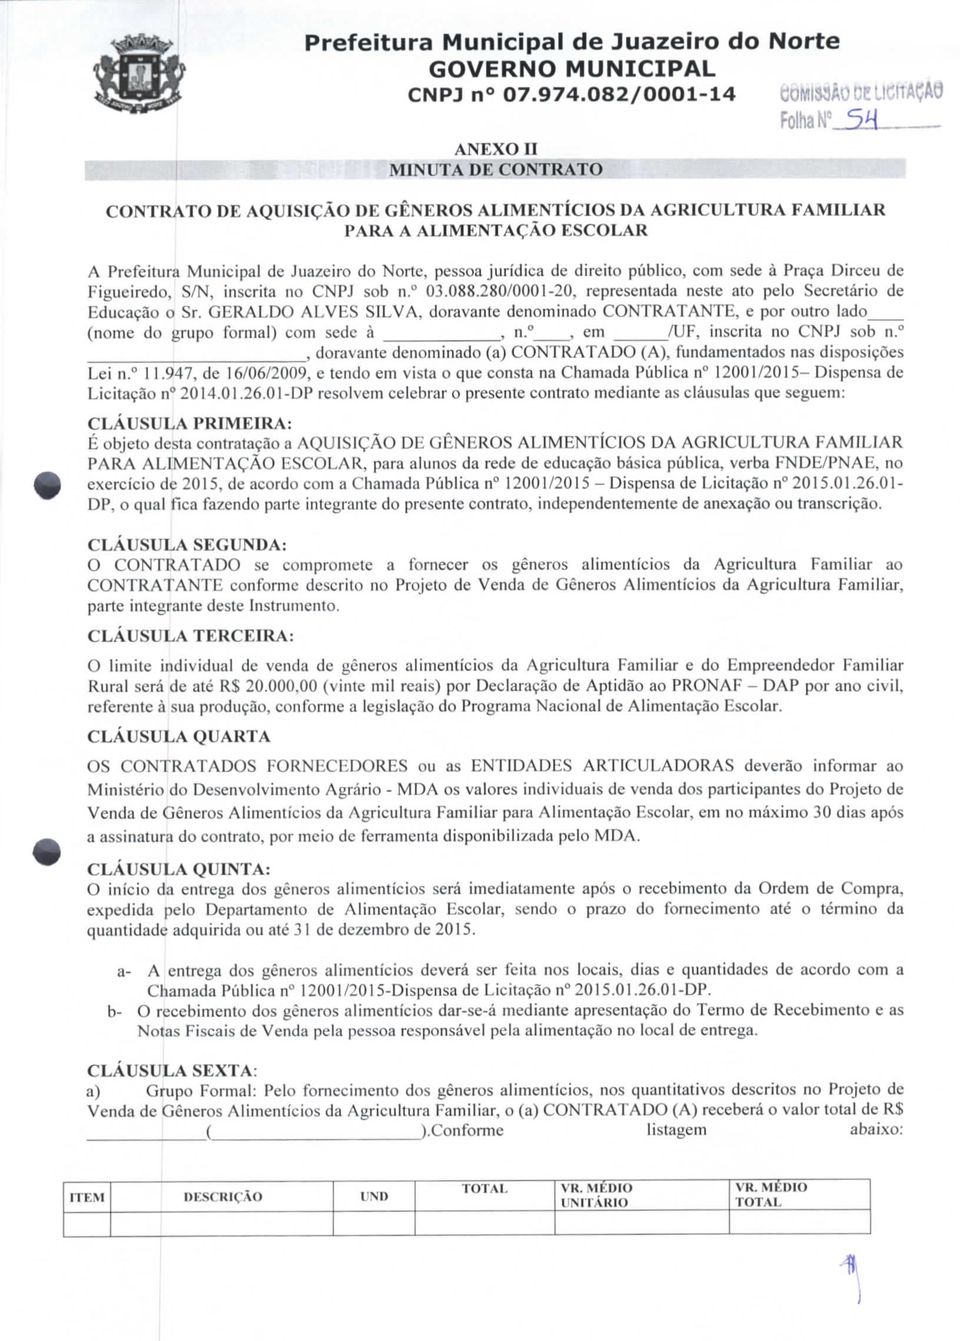 jurídica de direito público, com sede à Praça Dirceu de Figueiredo, S/N, inscrita no CNPJ sob n. 3.88.28/1-2, representada neste ato pelo Secretário de Educação o Sr.